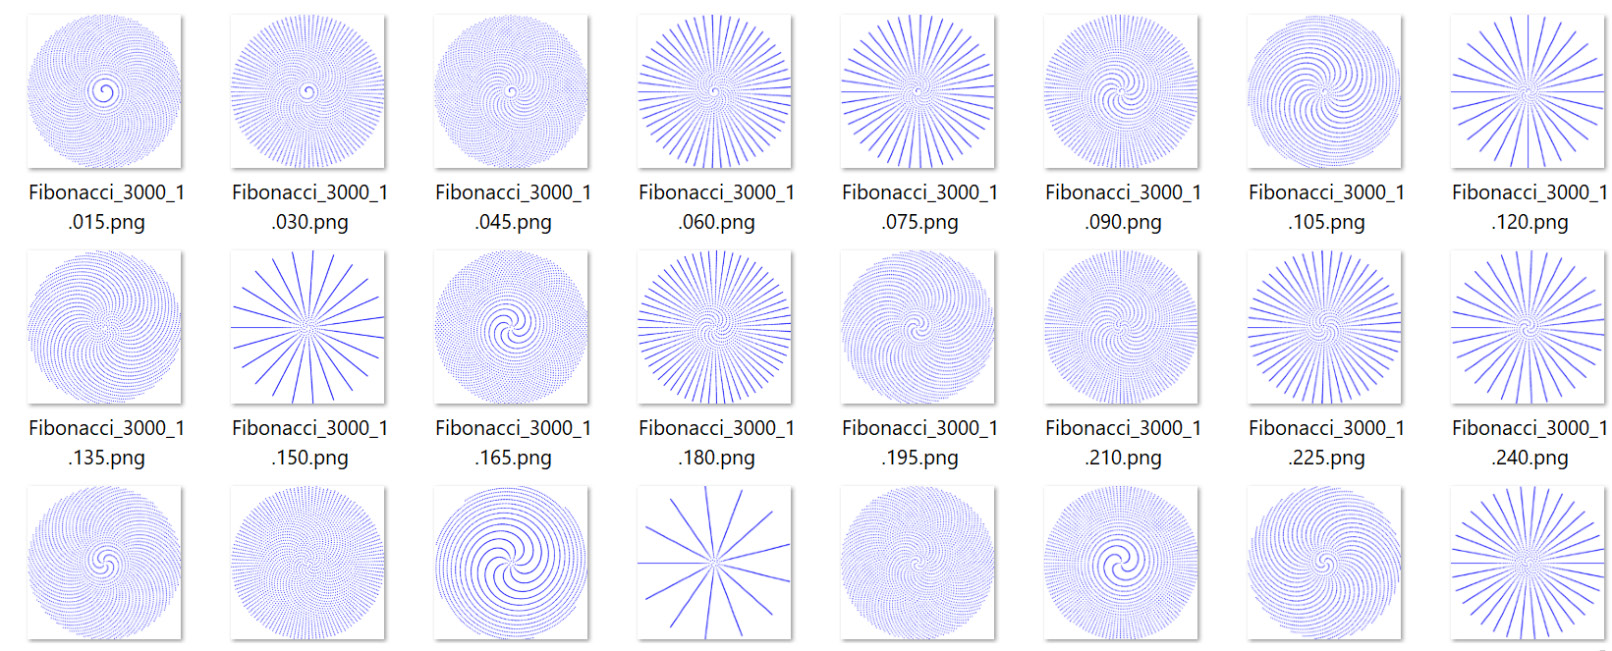 Figure 5.2: Fibonacci sequence image files
